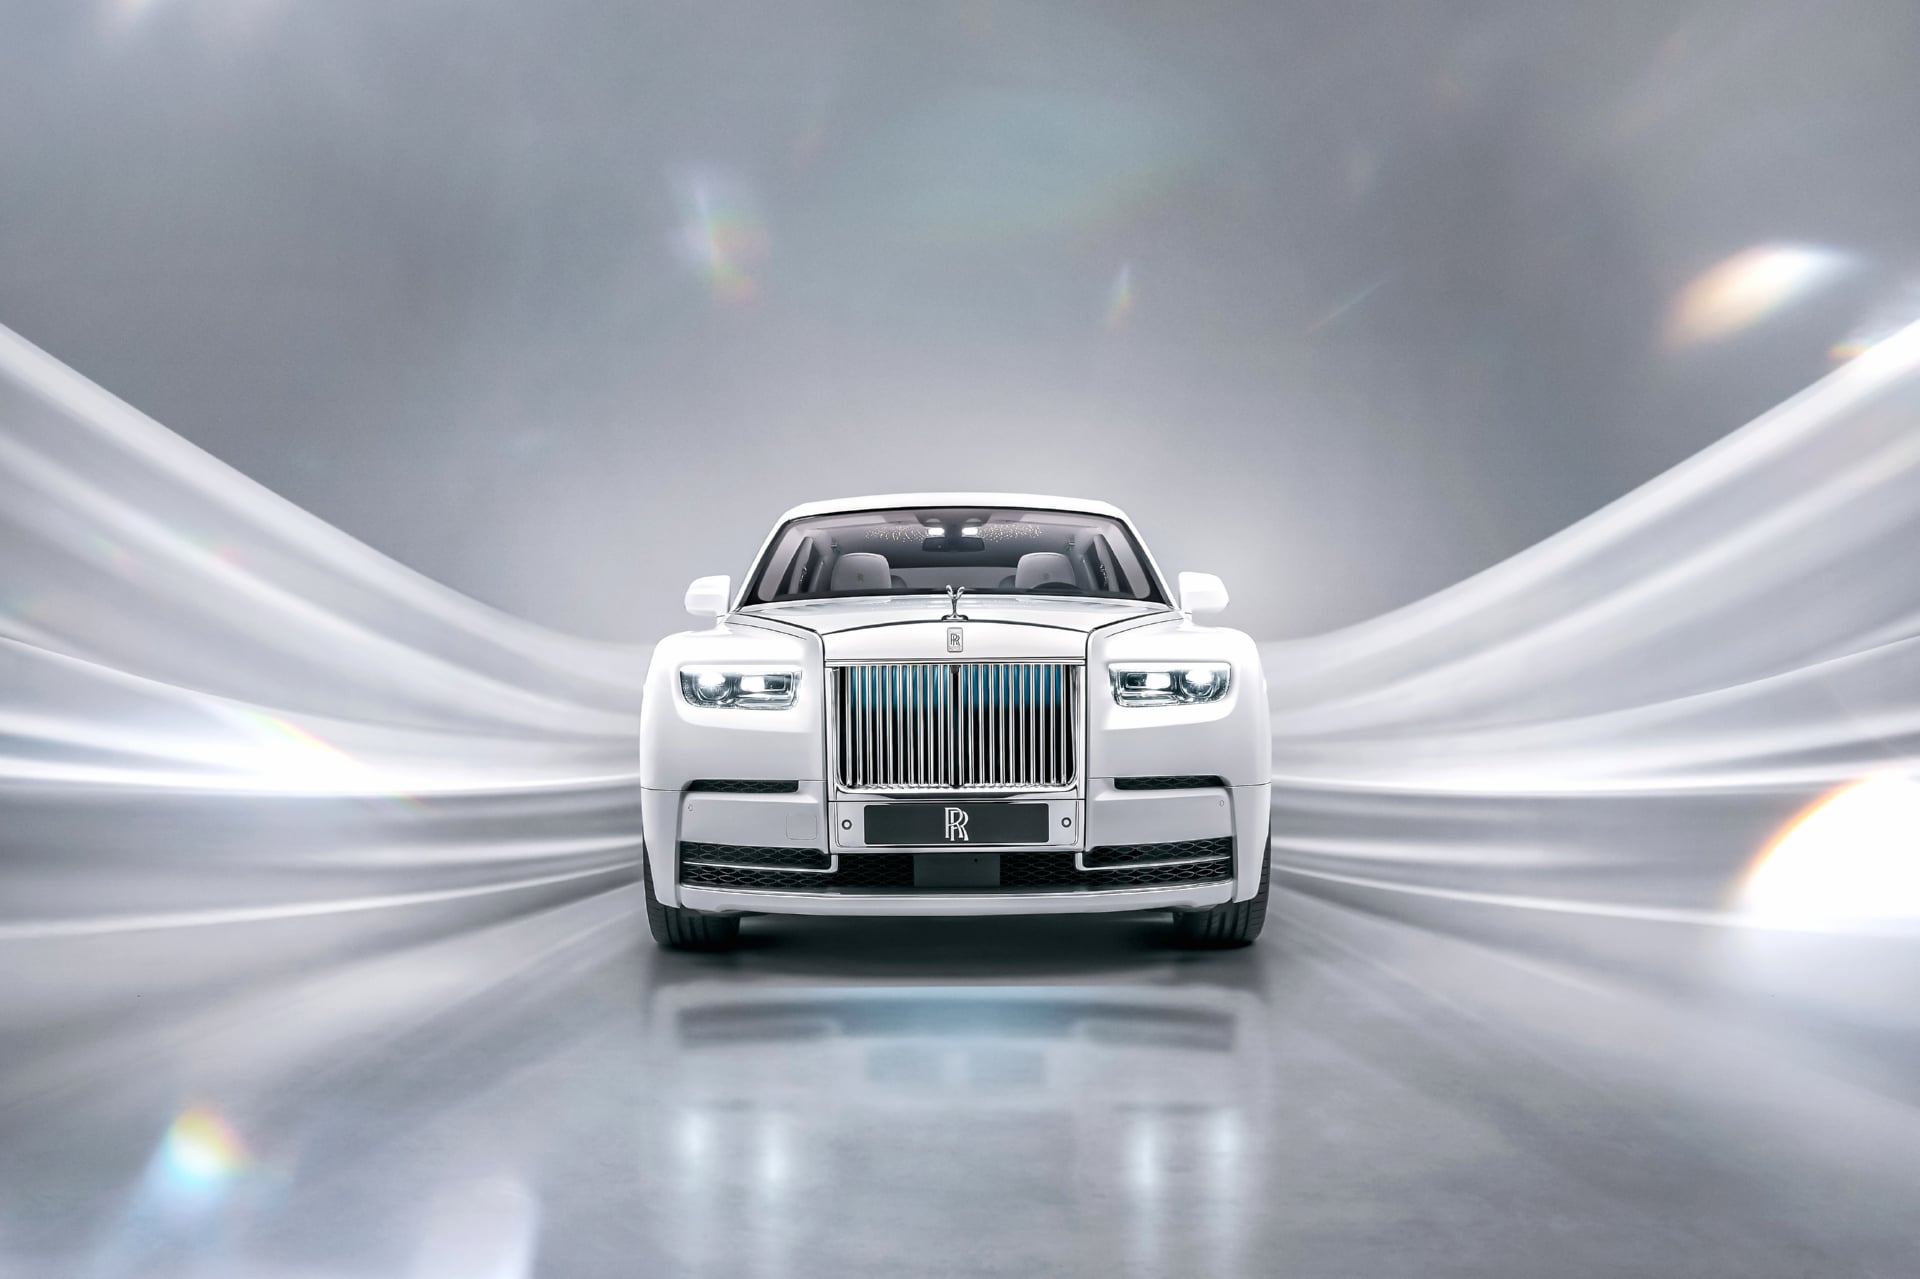 Rolls-Royce Phantom EWB Platino at 1280 x 960 size wallpapers HD quality